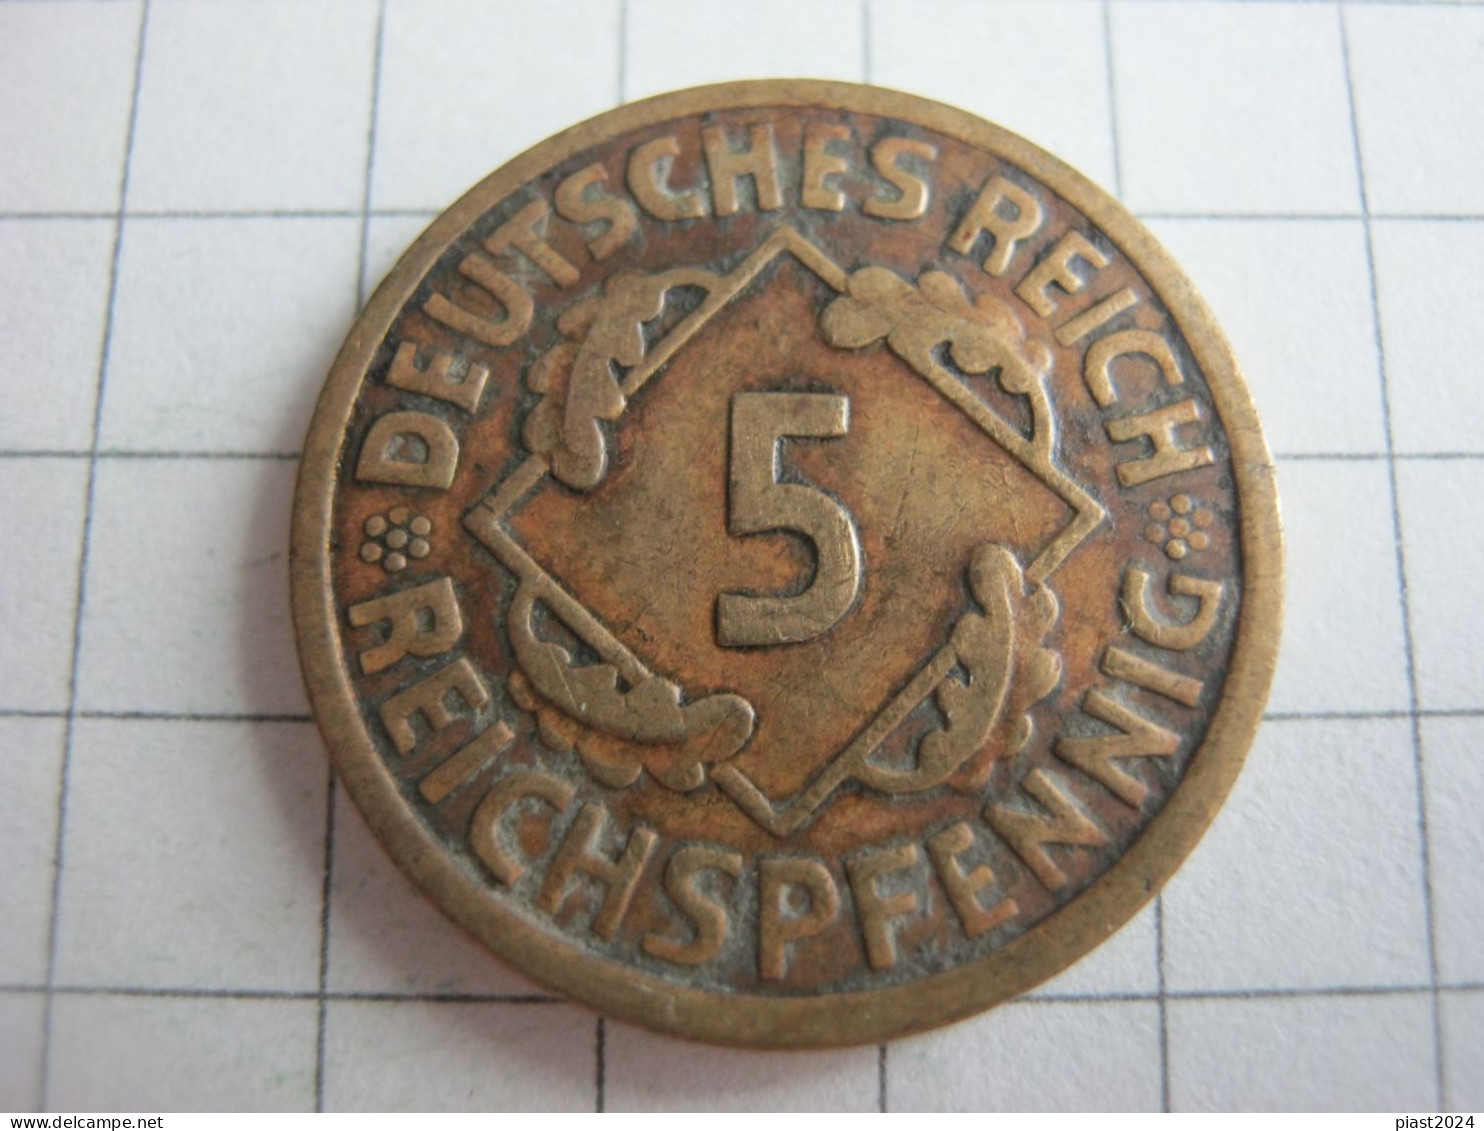 Germany 5 Reichspfennig 1925 E - 5 Rentenpfennig & 5 Reichspfennig